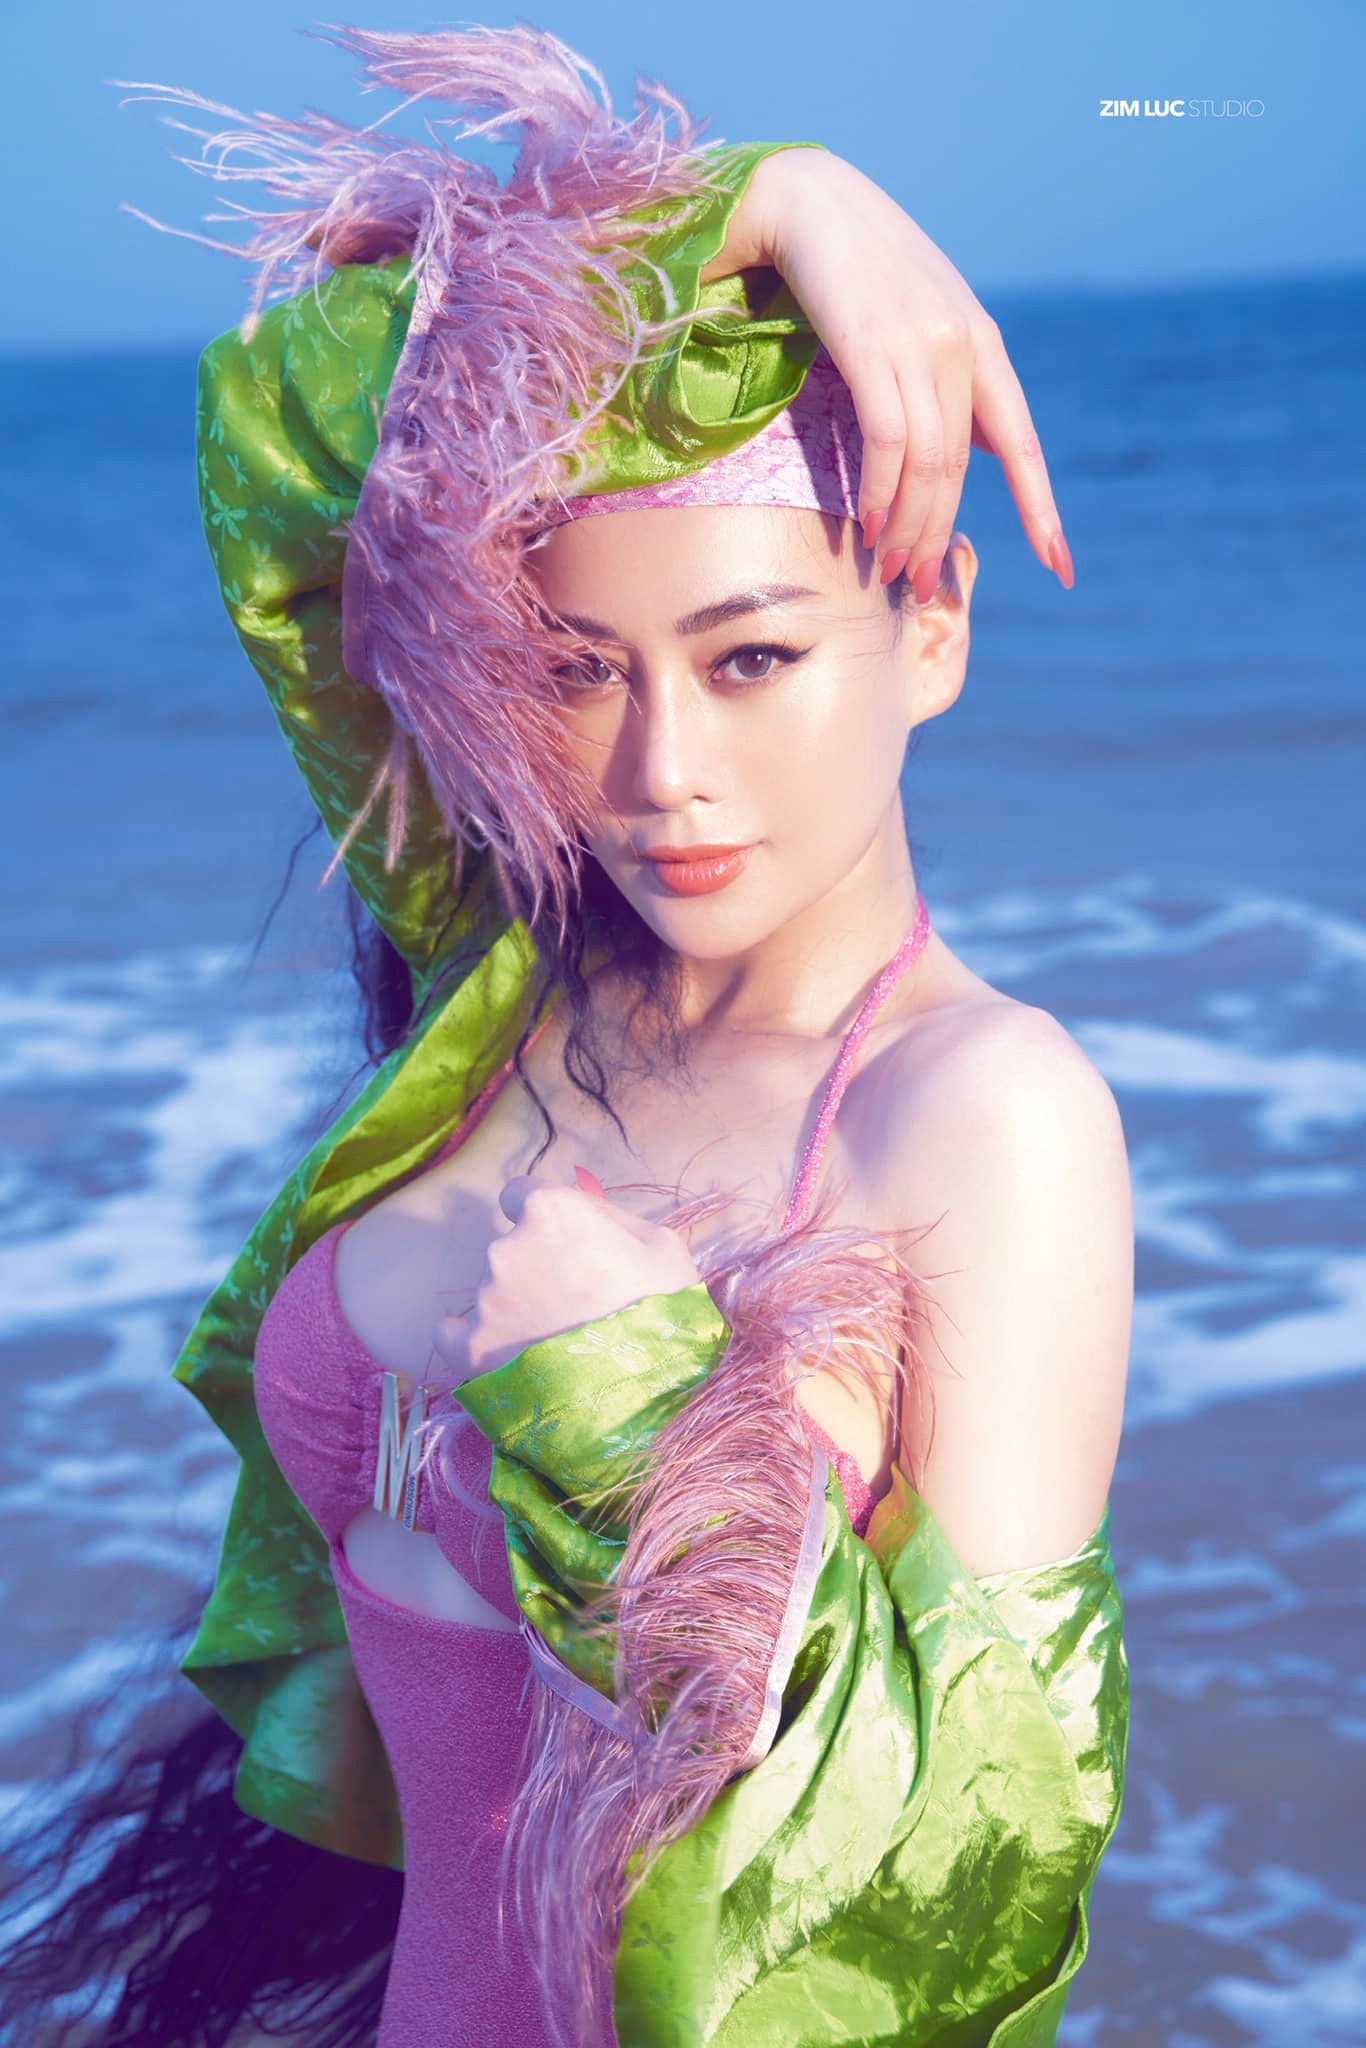 Phương Oanh tiếp tục 'chiêu đãi' fan bằng bộ ảnh bikini hồng rực giữa biển - Ảnh 3